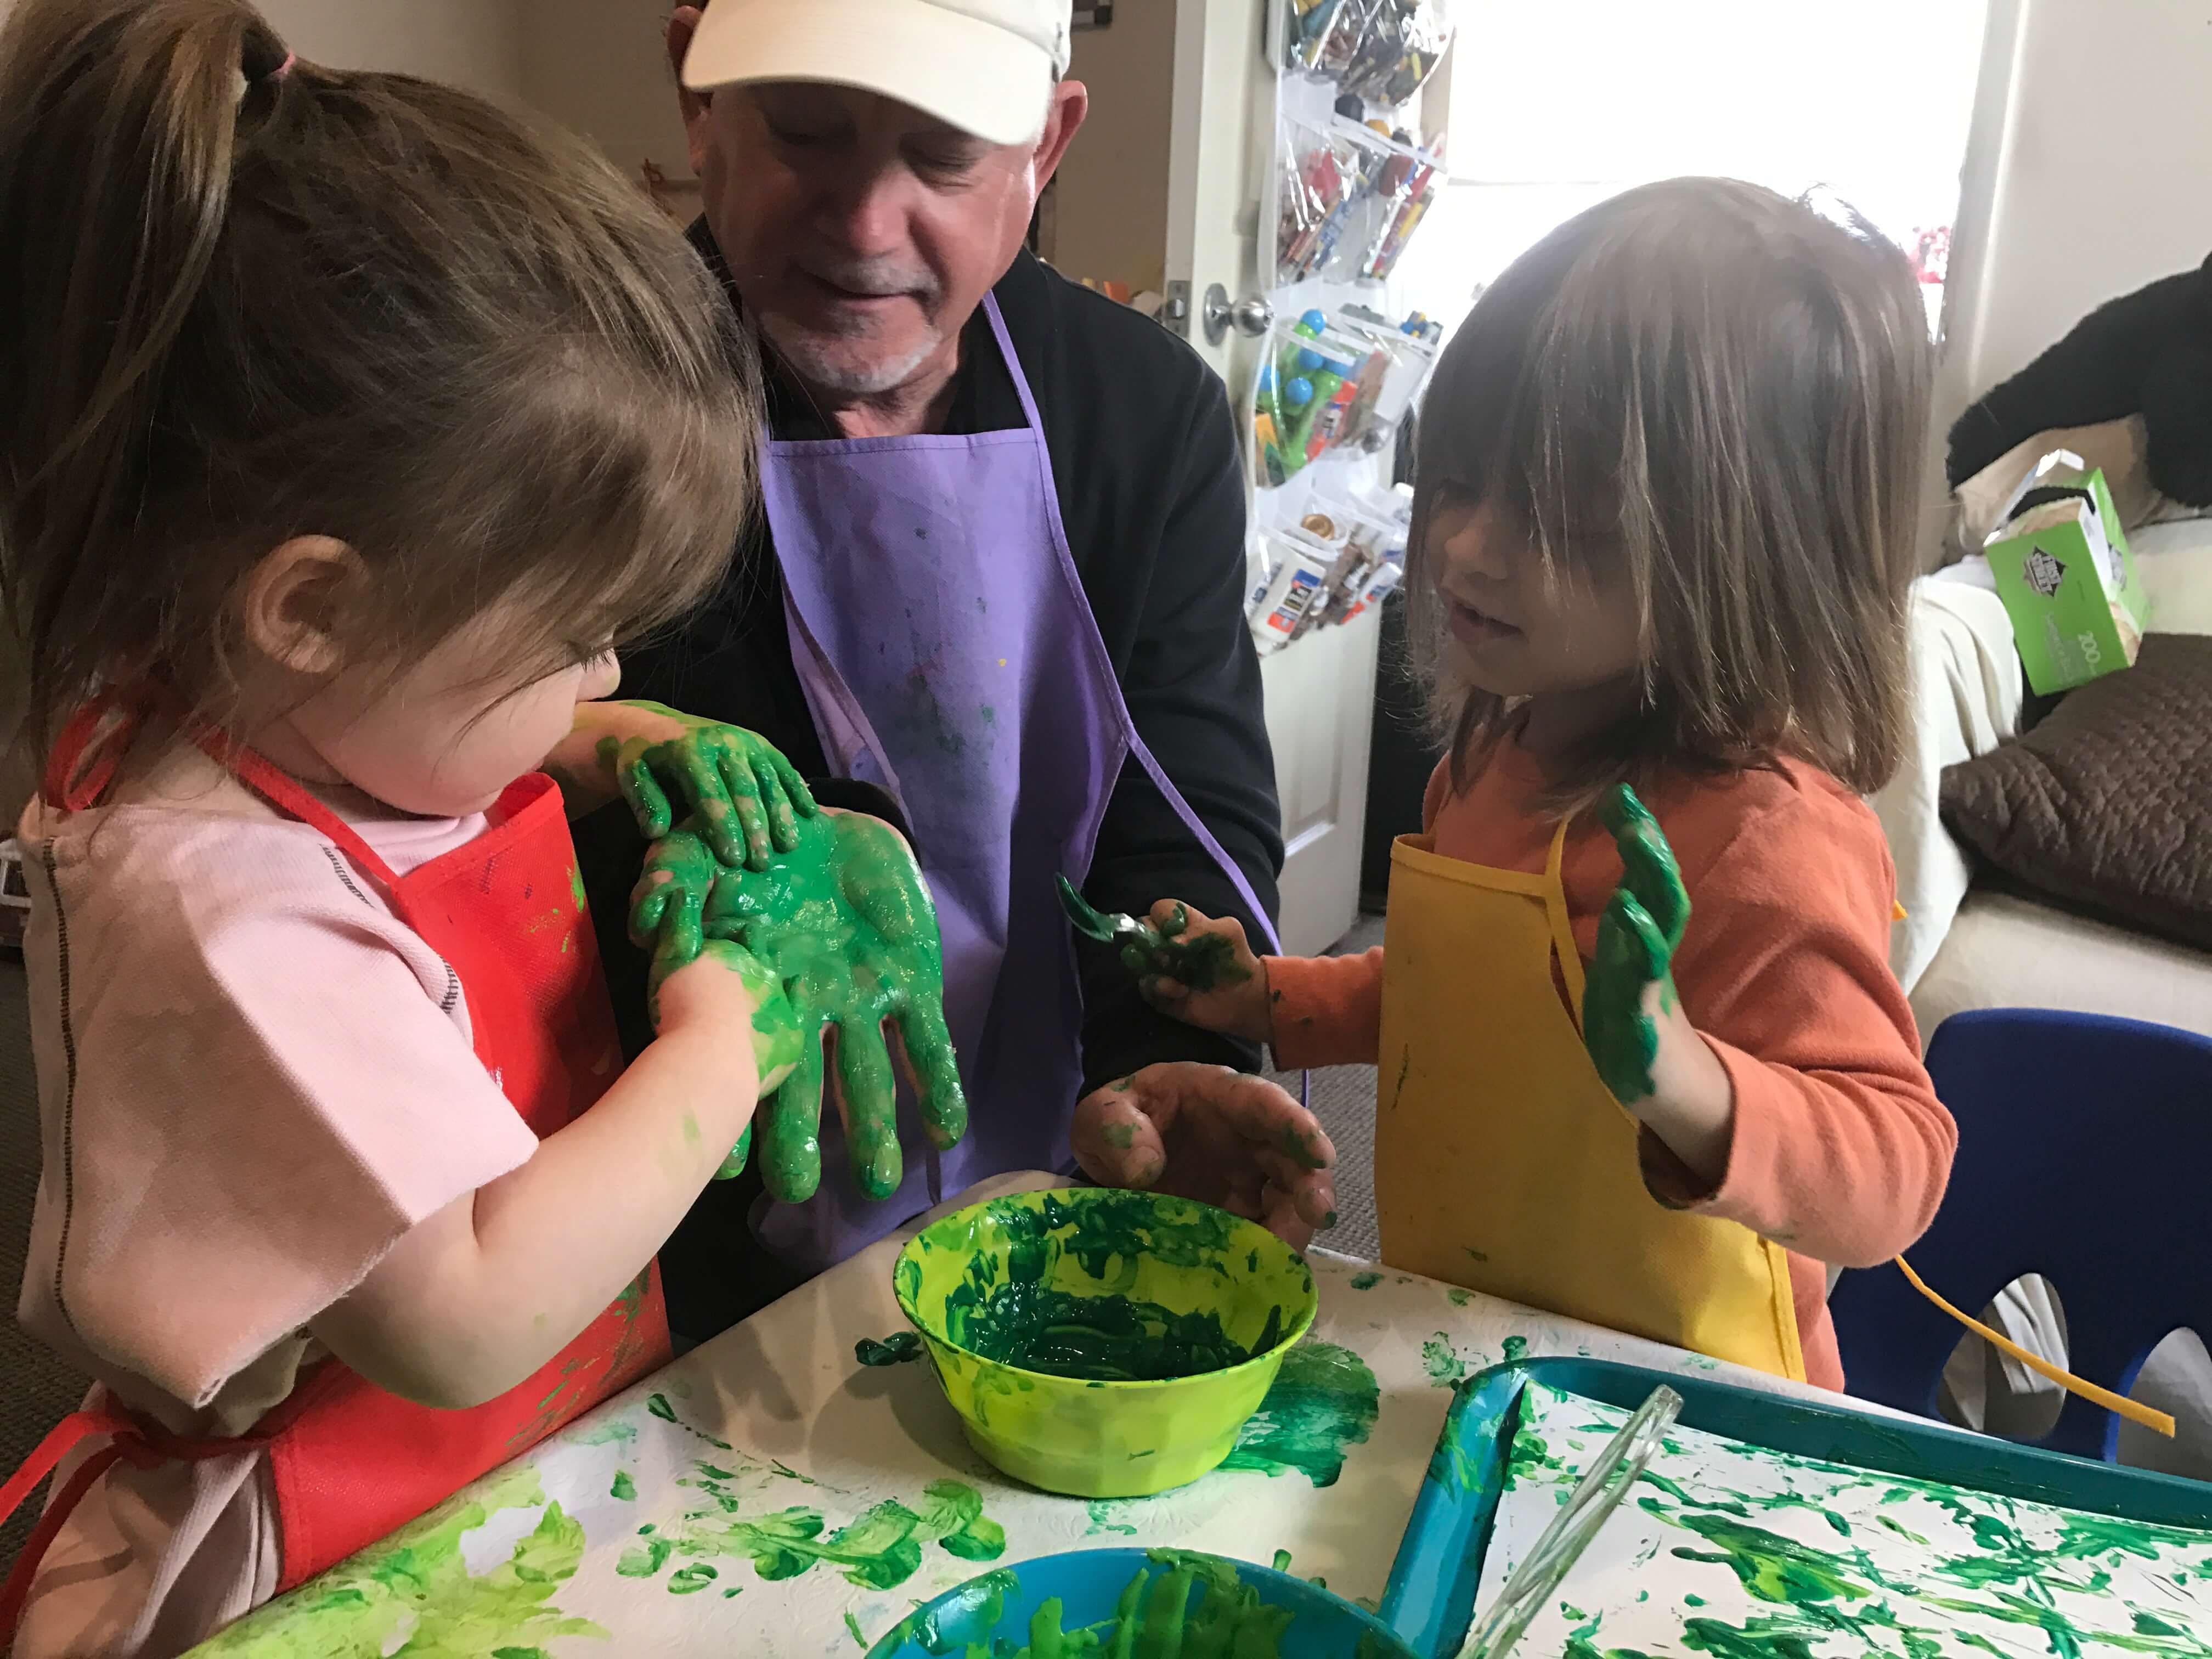 2 children paiting teacher's hand with green paint at early childhood development associates class